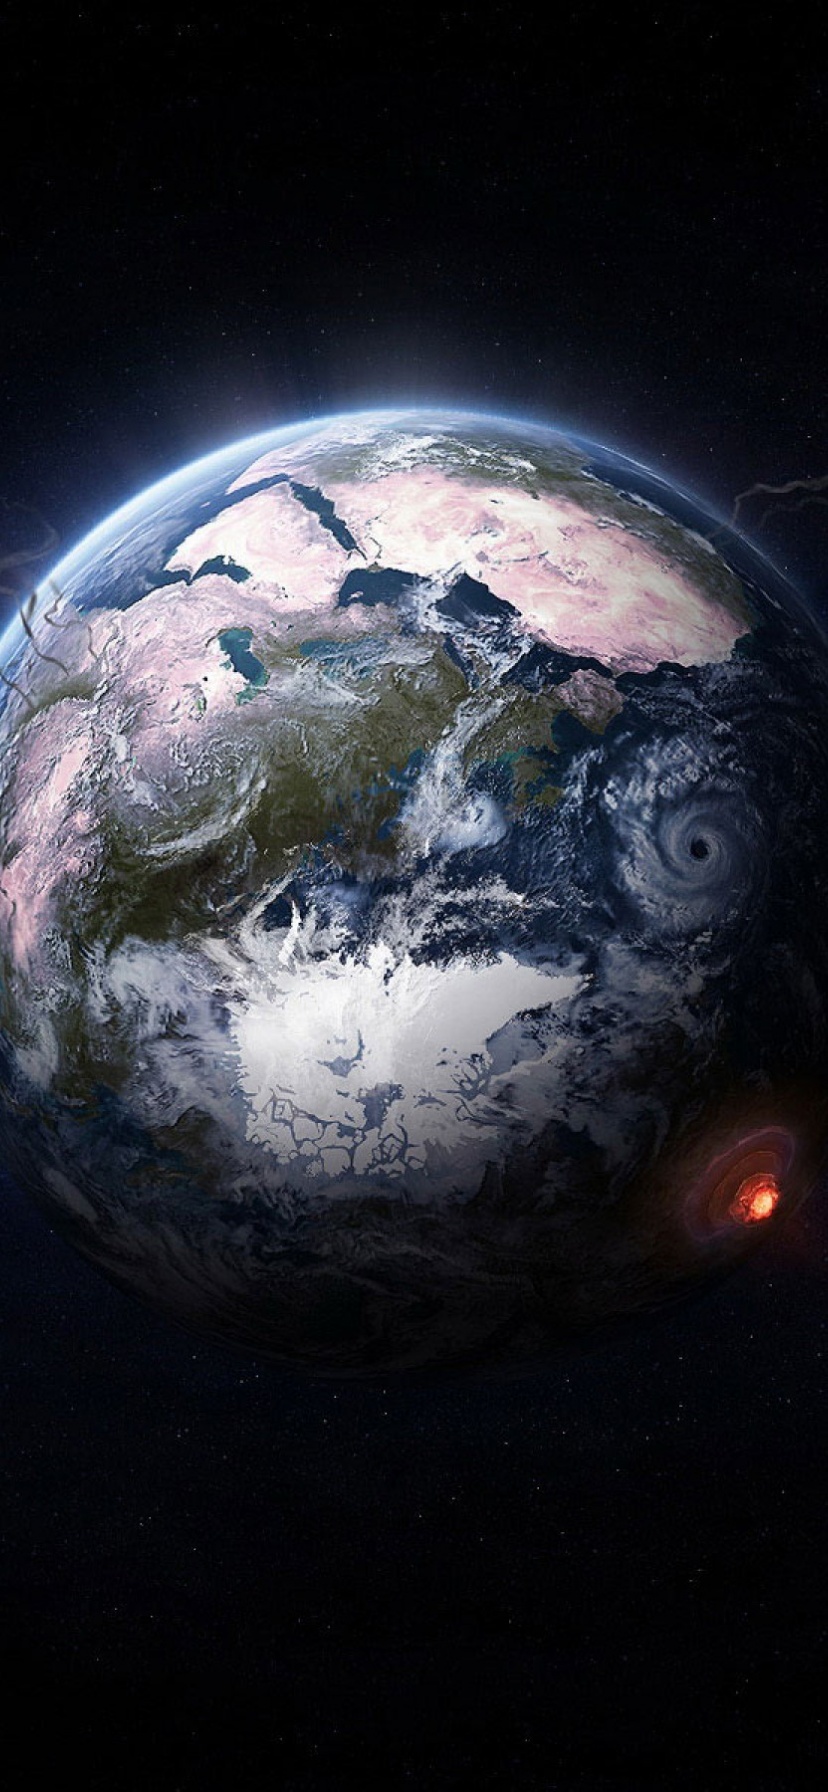 Nuclear Explosion On Earth